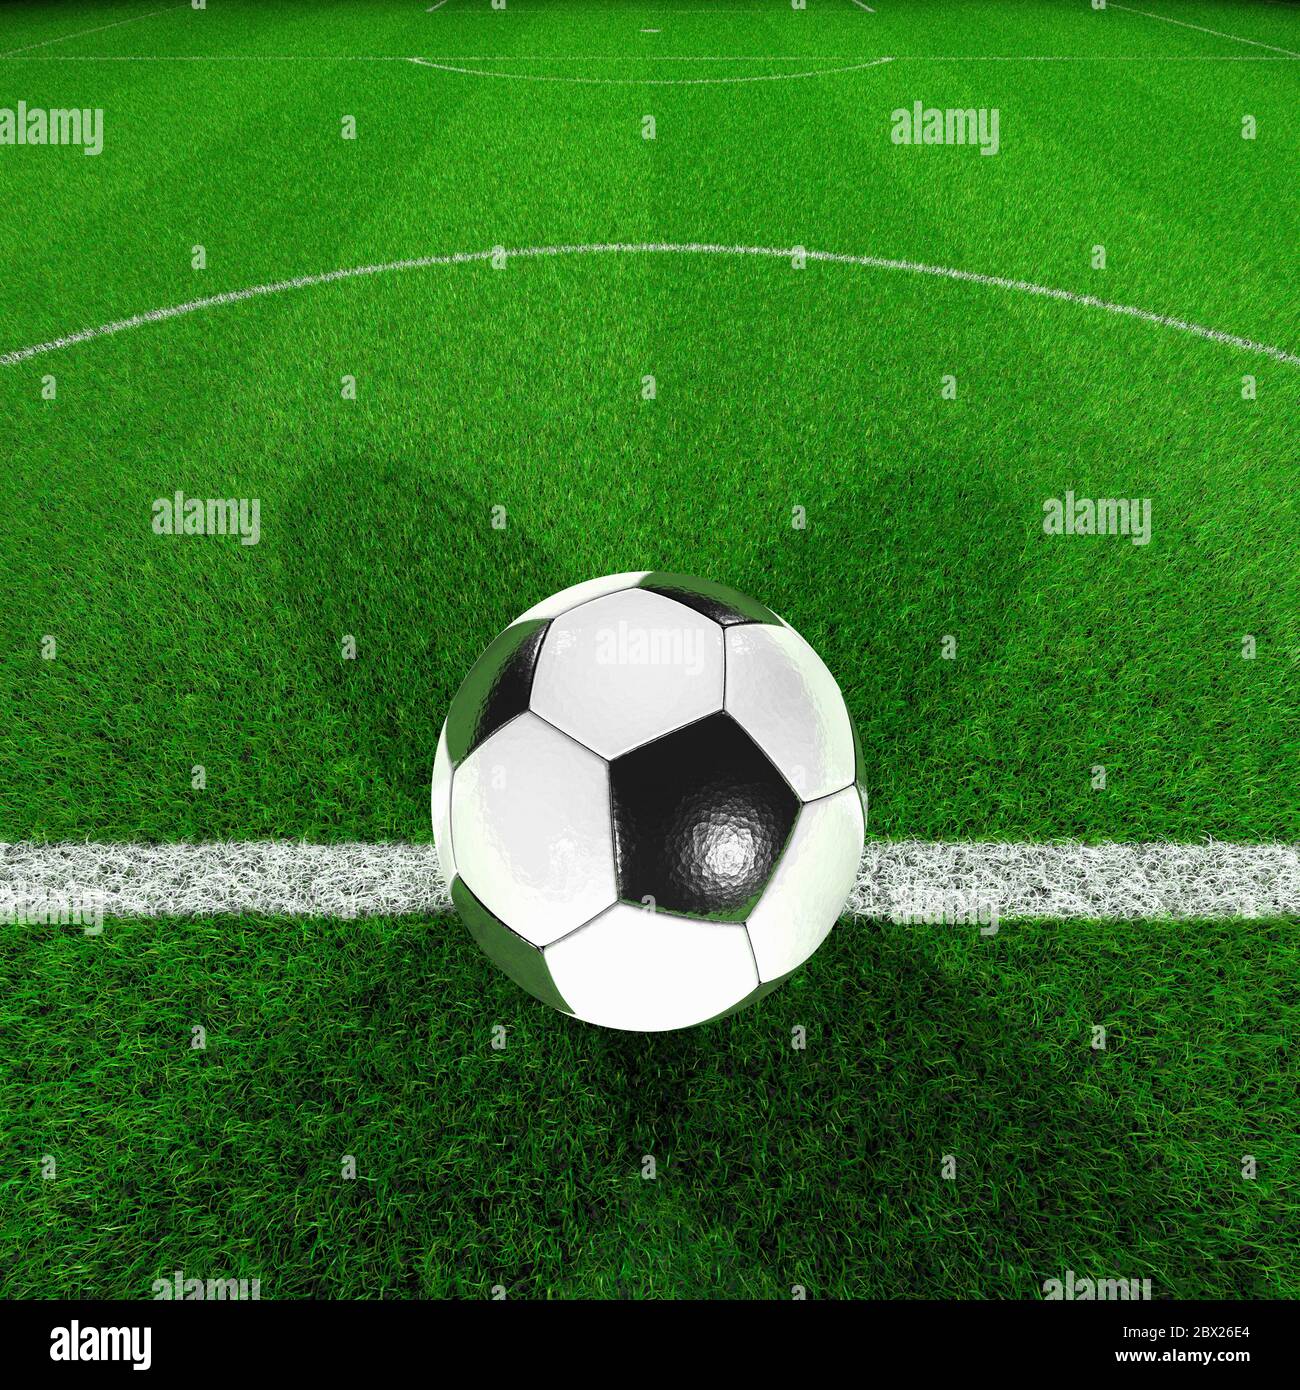 Fußballplatz. Ball in der Mitte Punkt Mitte Kreis Gras. Flutlicht, Nacht. Nahaufnahme.Kick off. Stockfoto